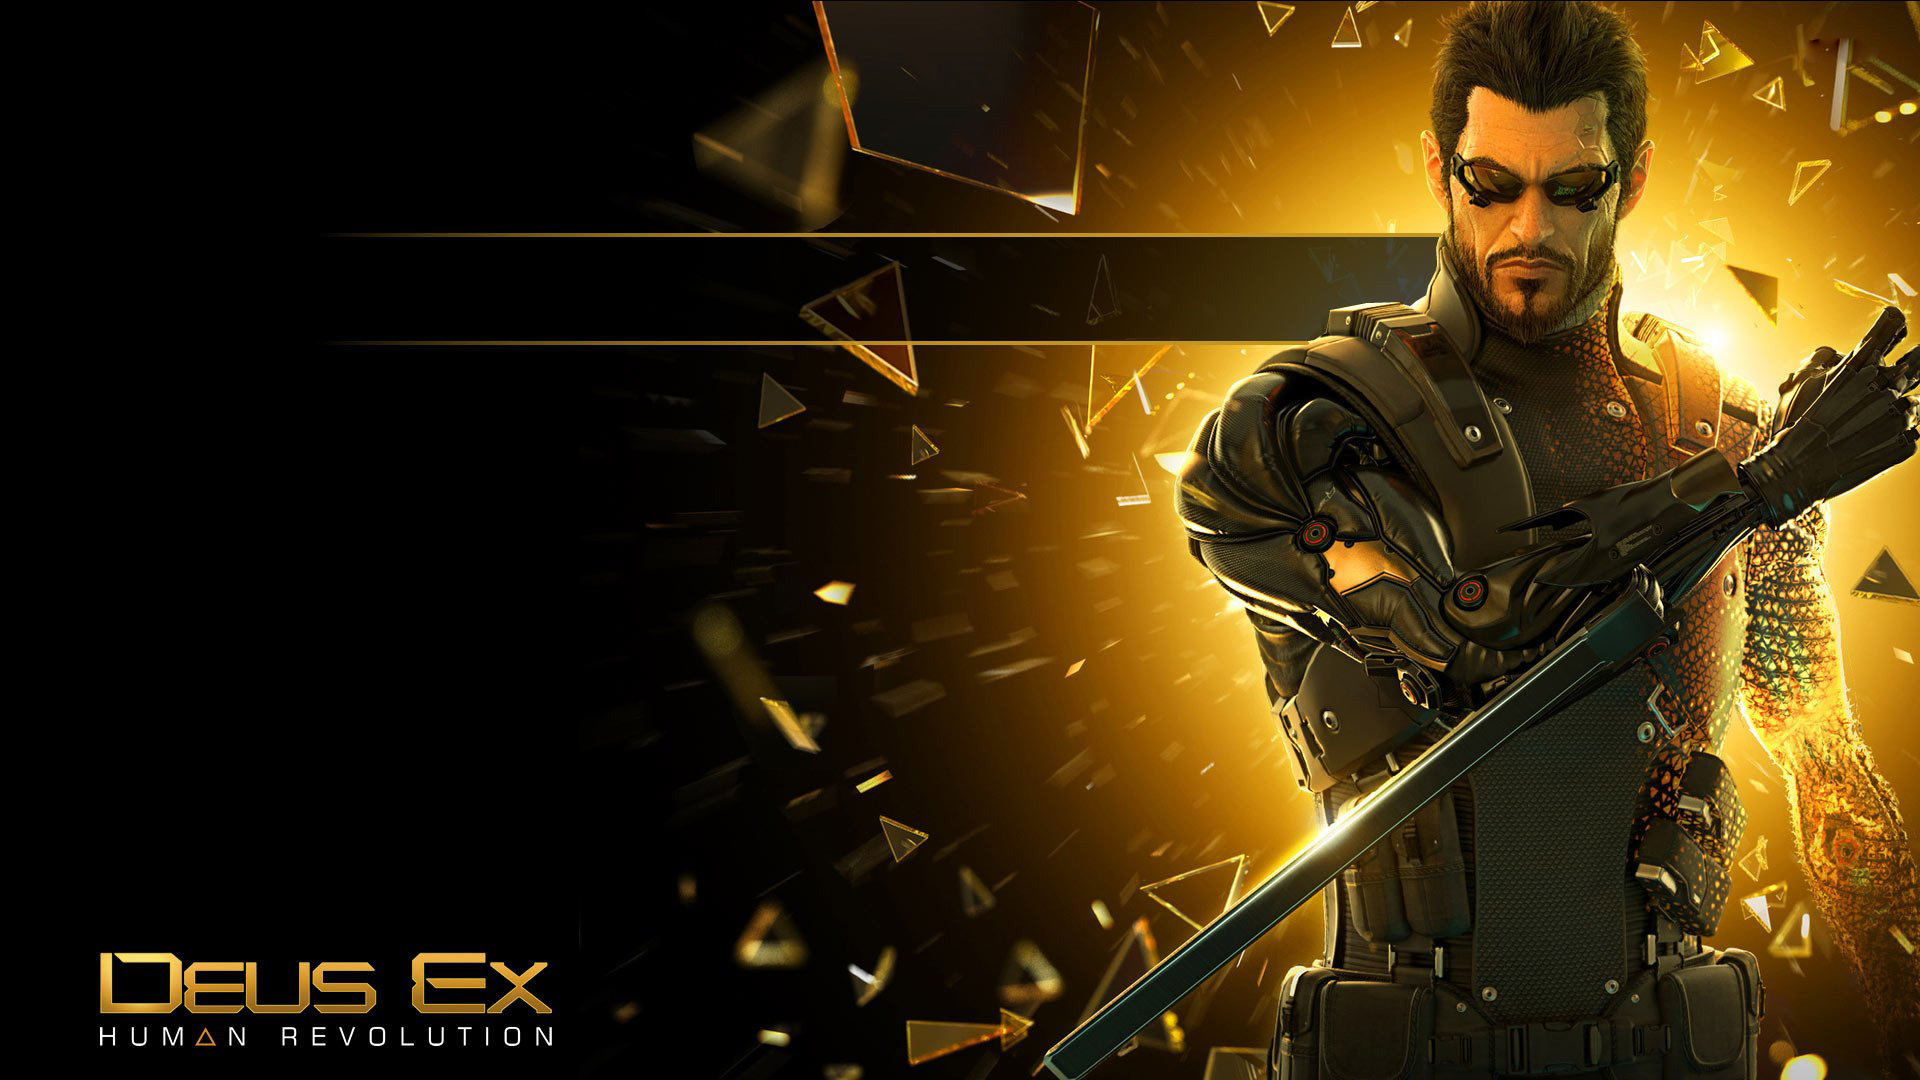 Deus Ex Human Revolution Aetwork , HD Wallpaper & Backgrounds